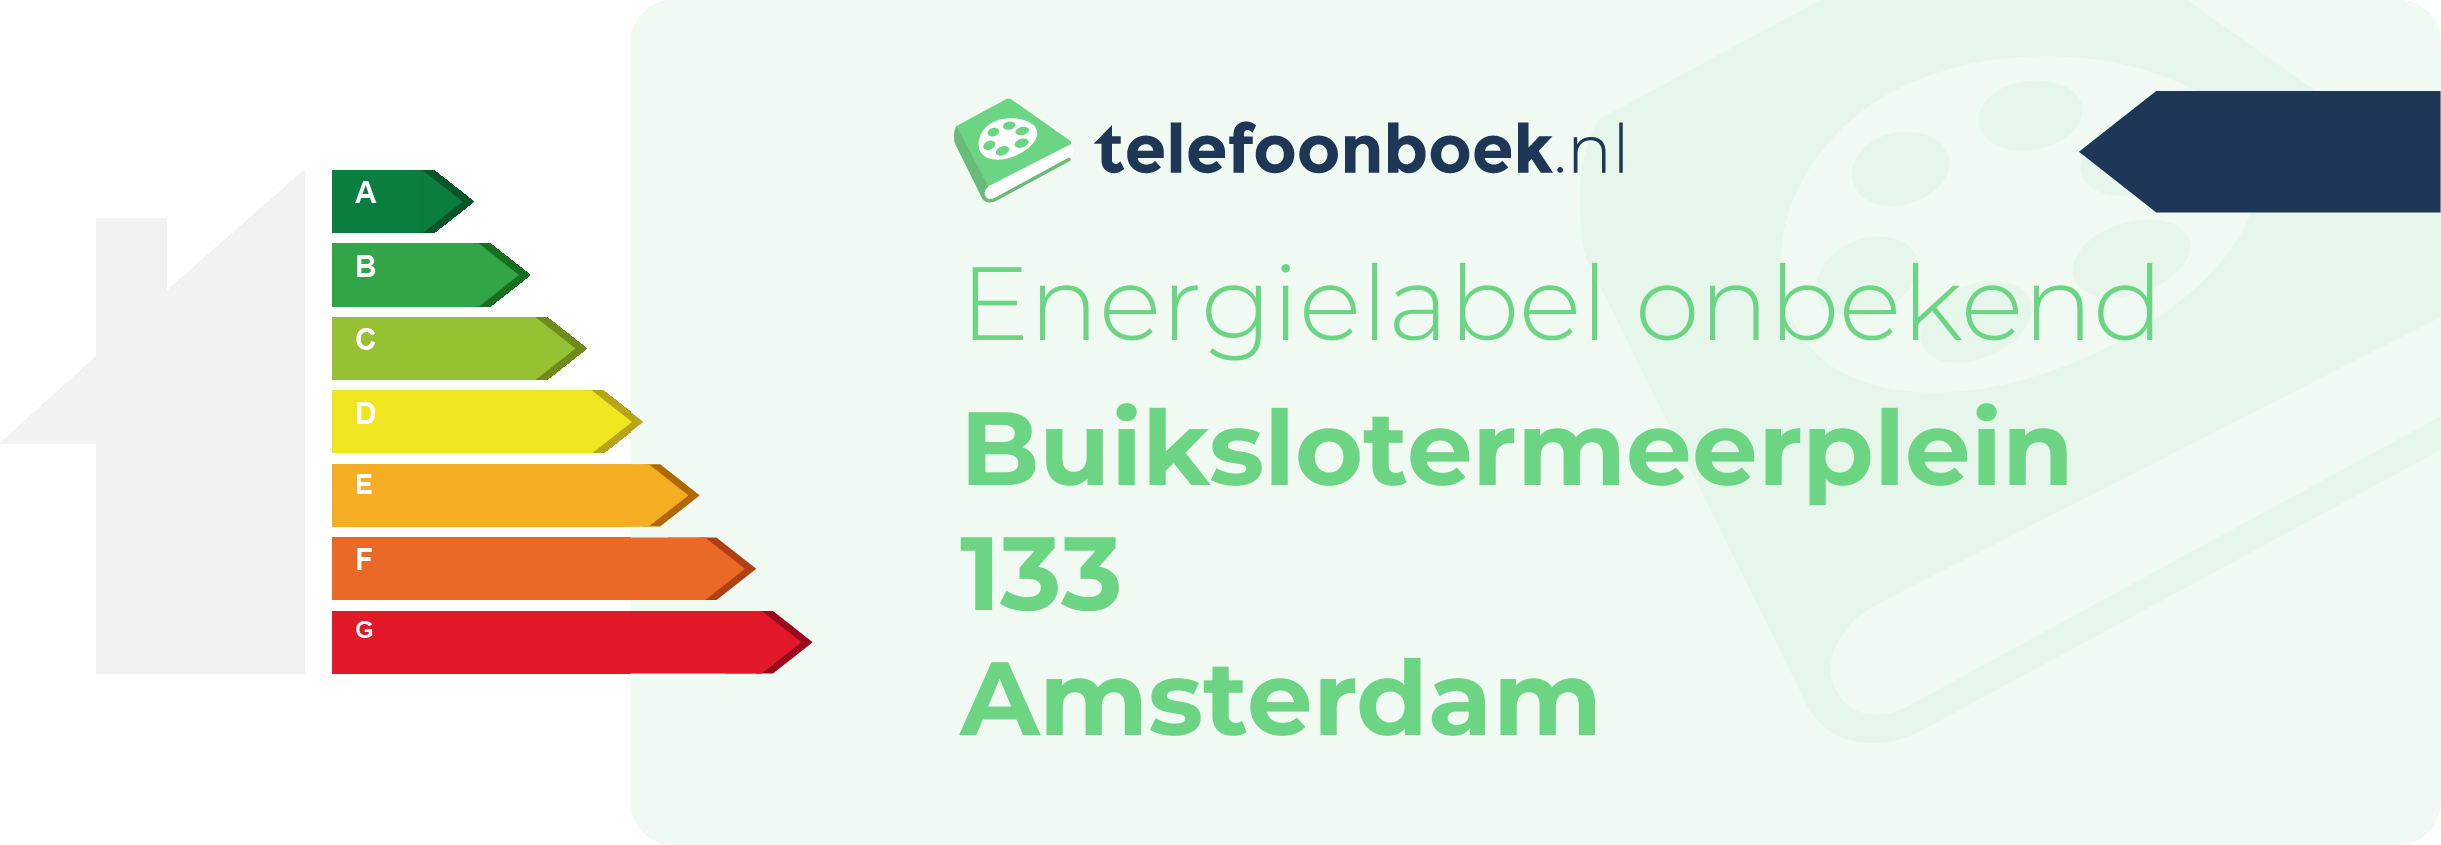 Energielabel Buikslotermeerplein 133 Amsterdam